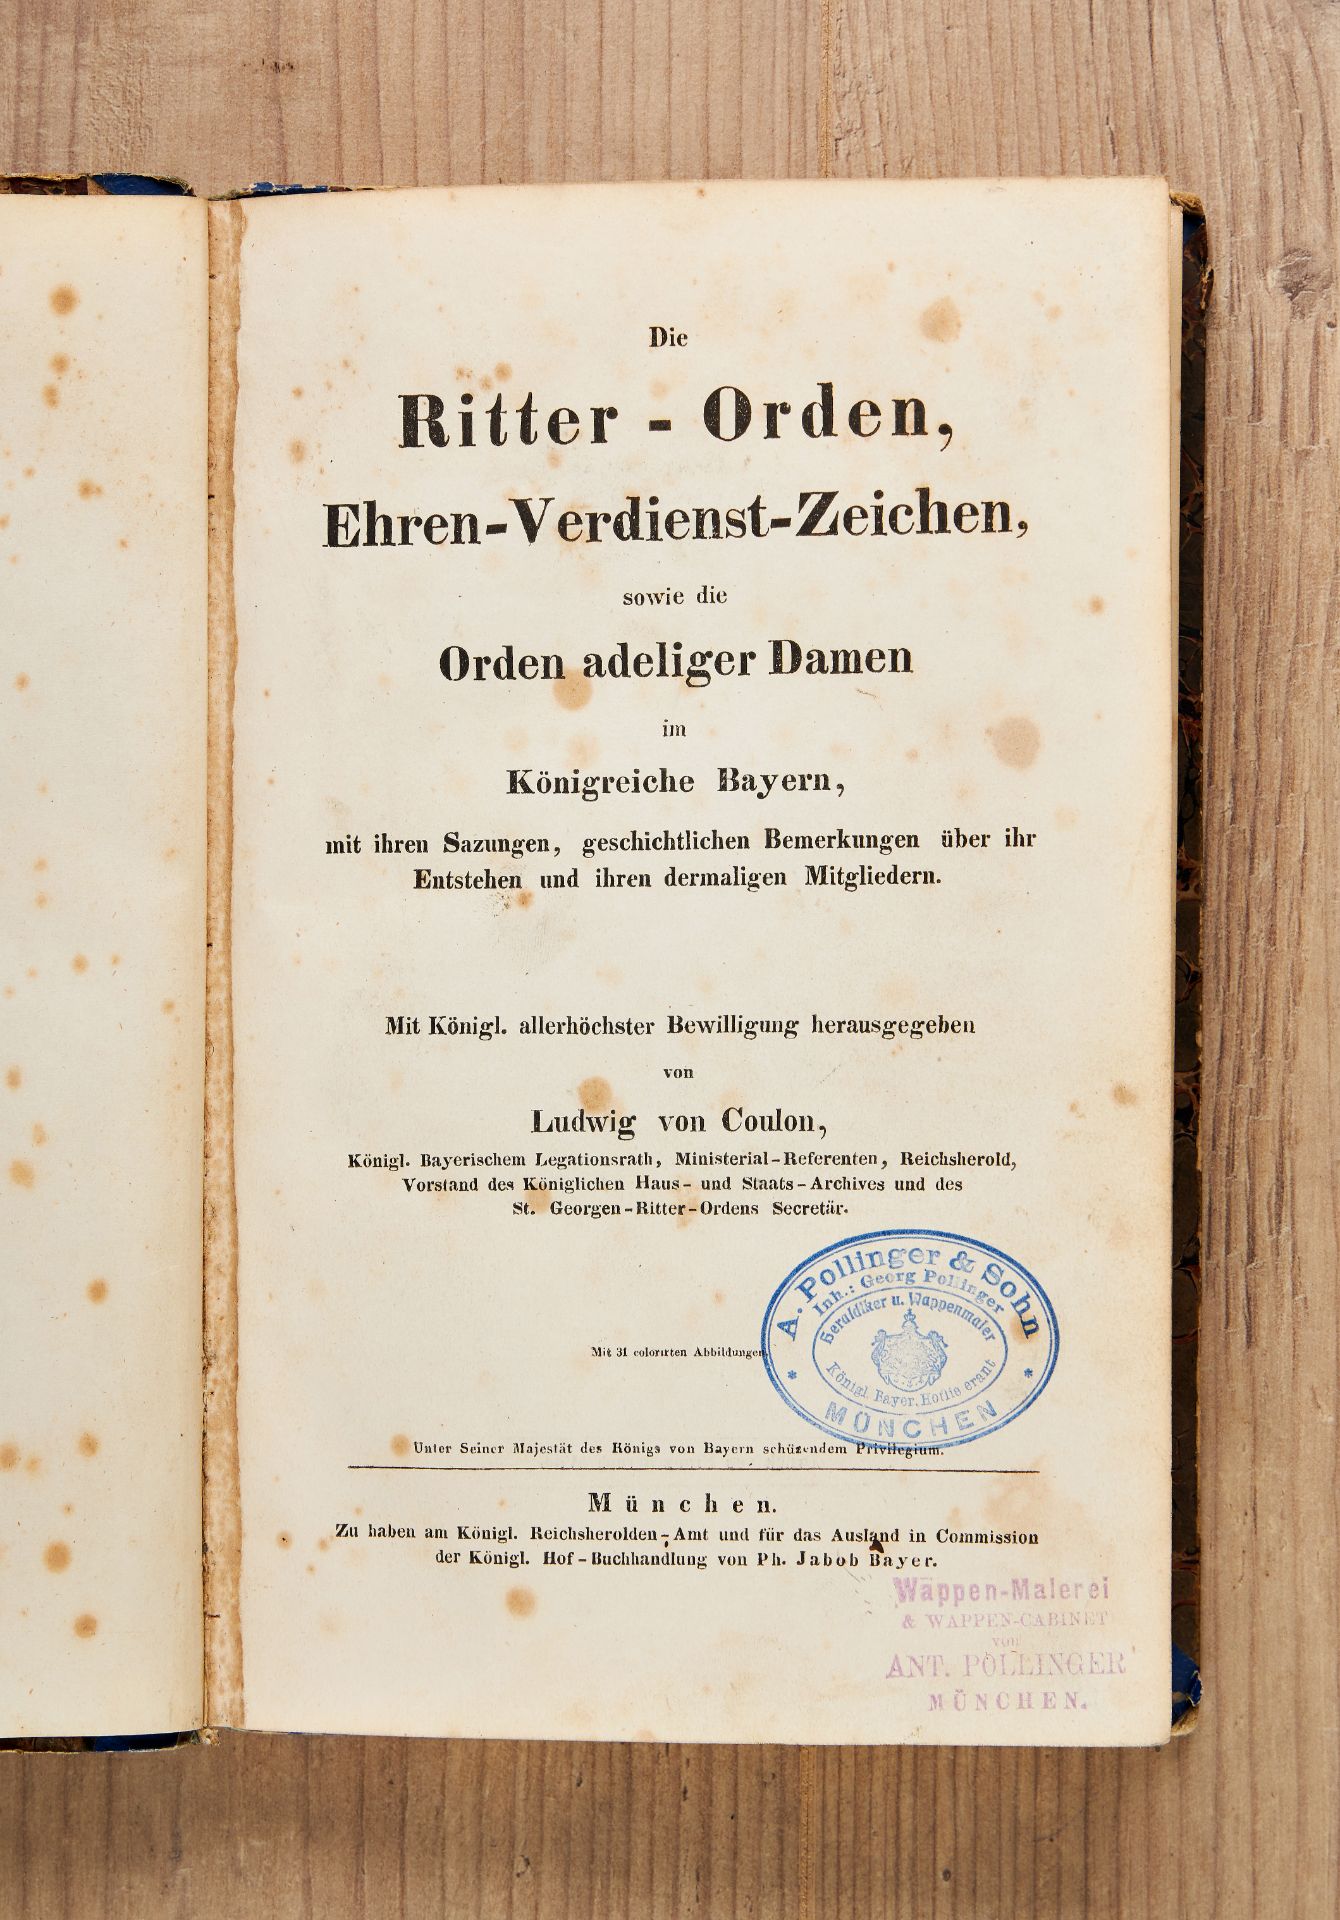 Bayern : Ludwig von Coulon, Ritter-Orden, Ehren-Verdienst-Zeichen, sowie die Orden adeliger Dame...